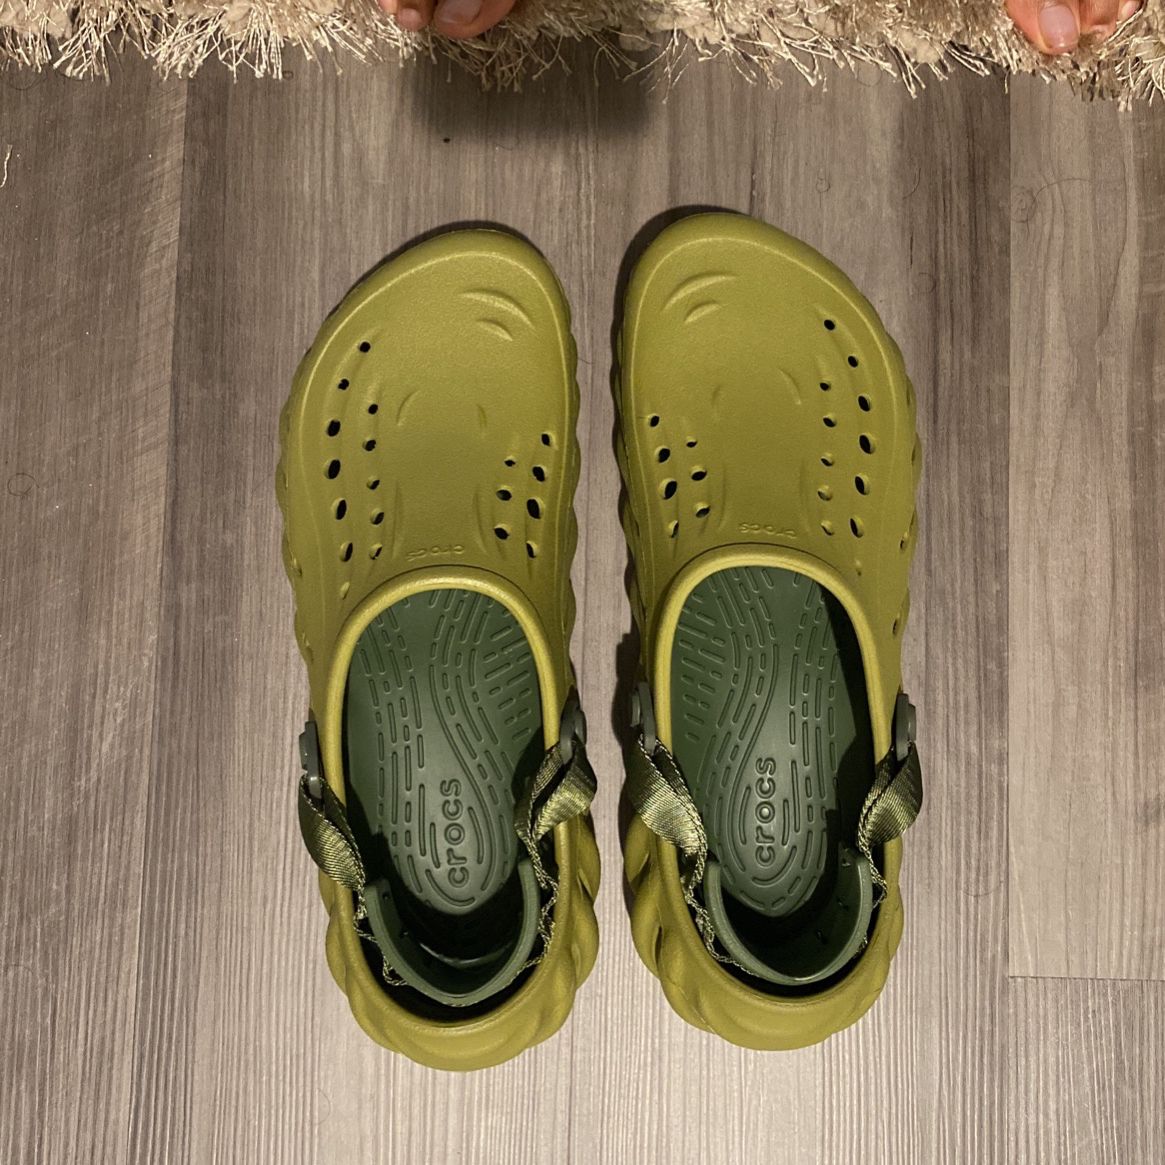 Crocs, Olive Green, Size 11